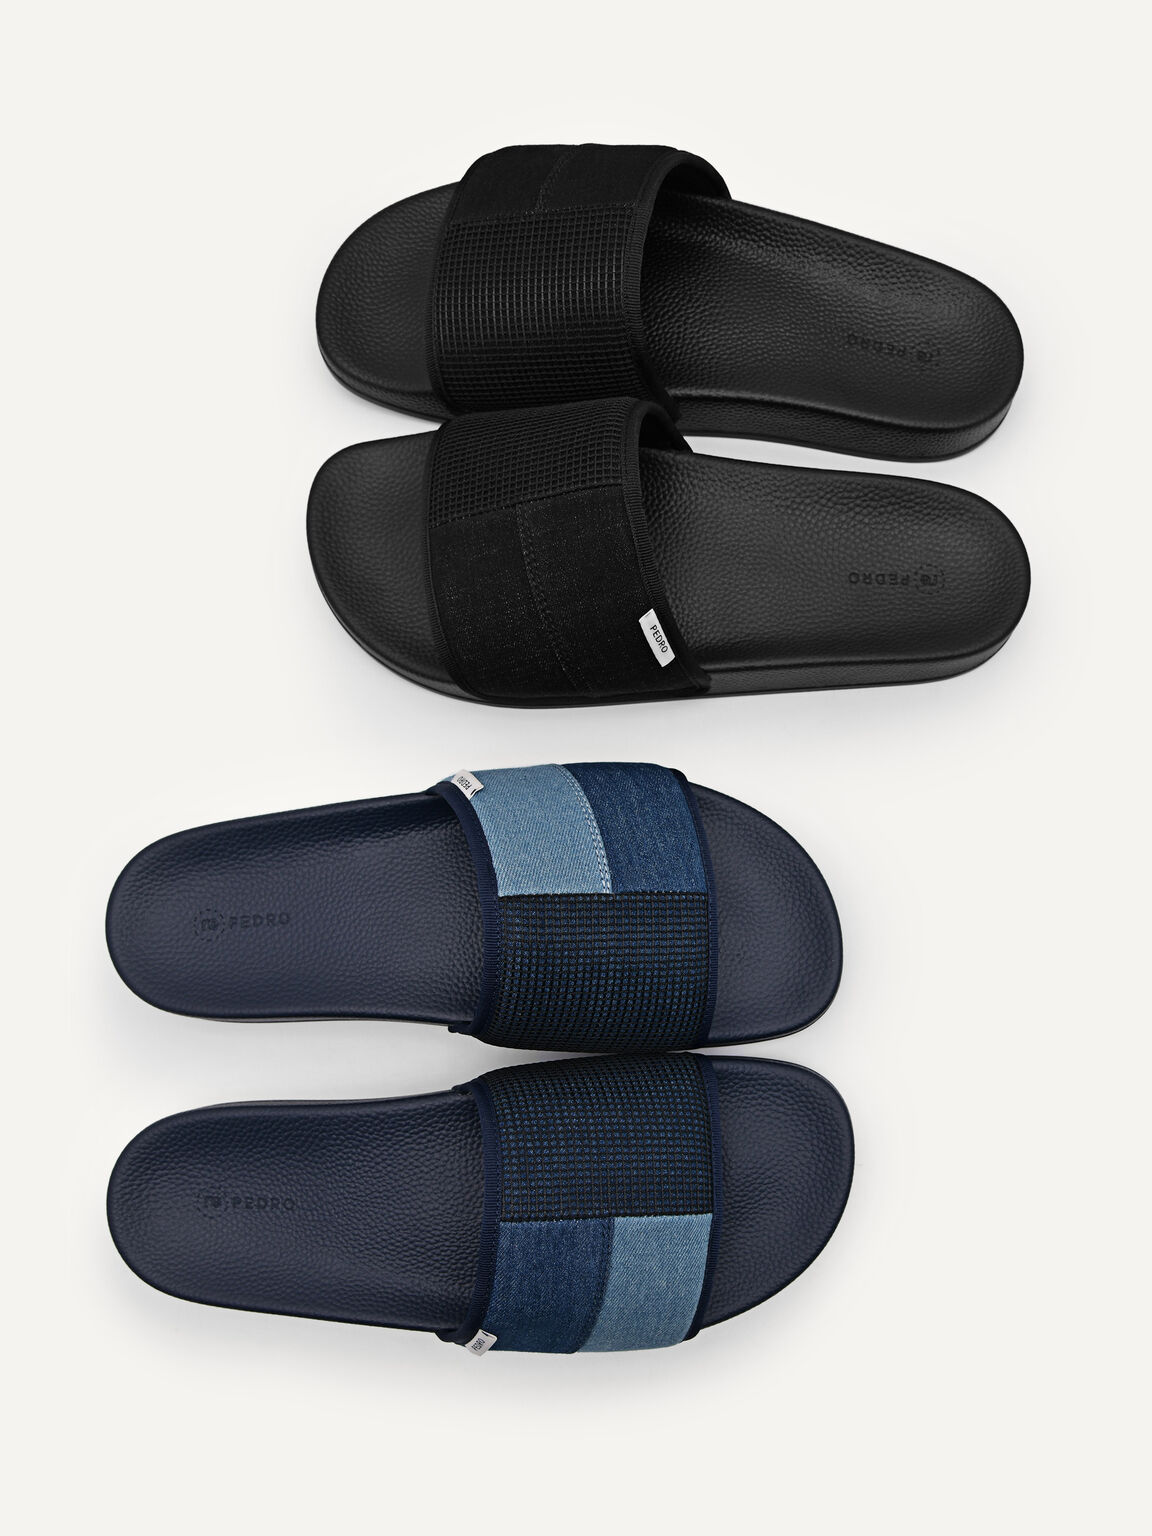 Denim Slide Sandals, Black